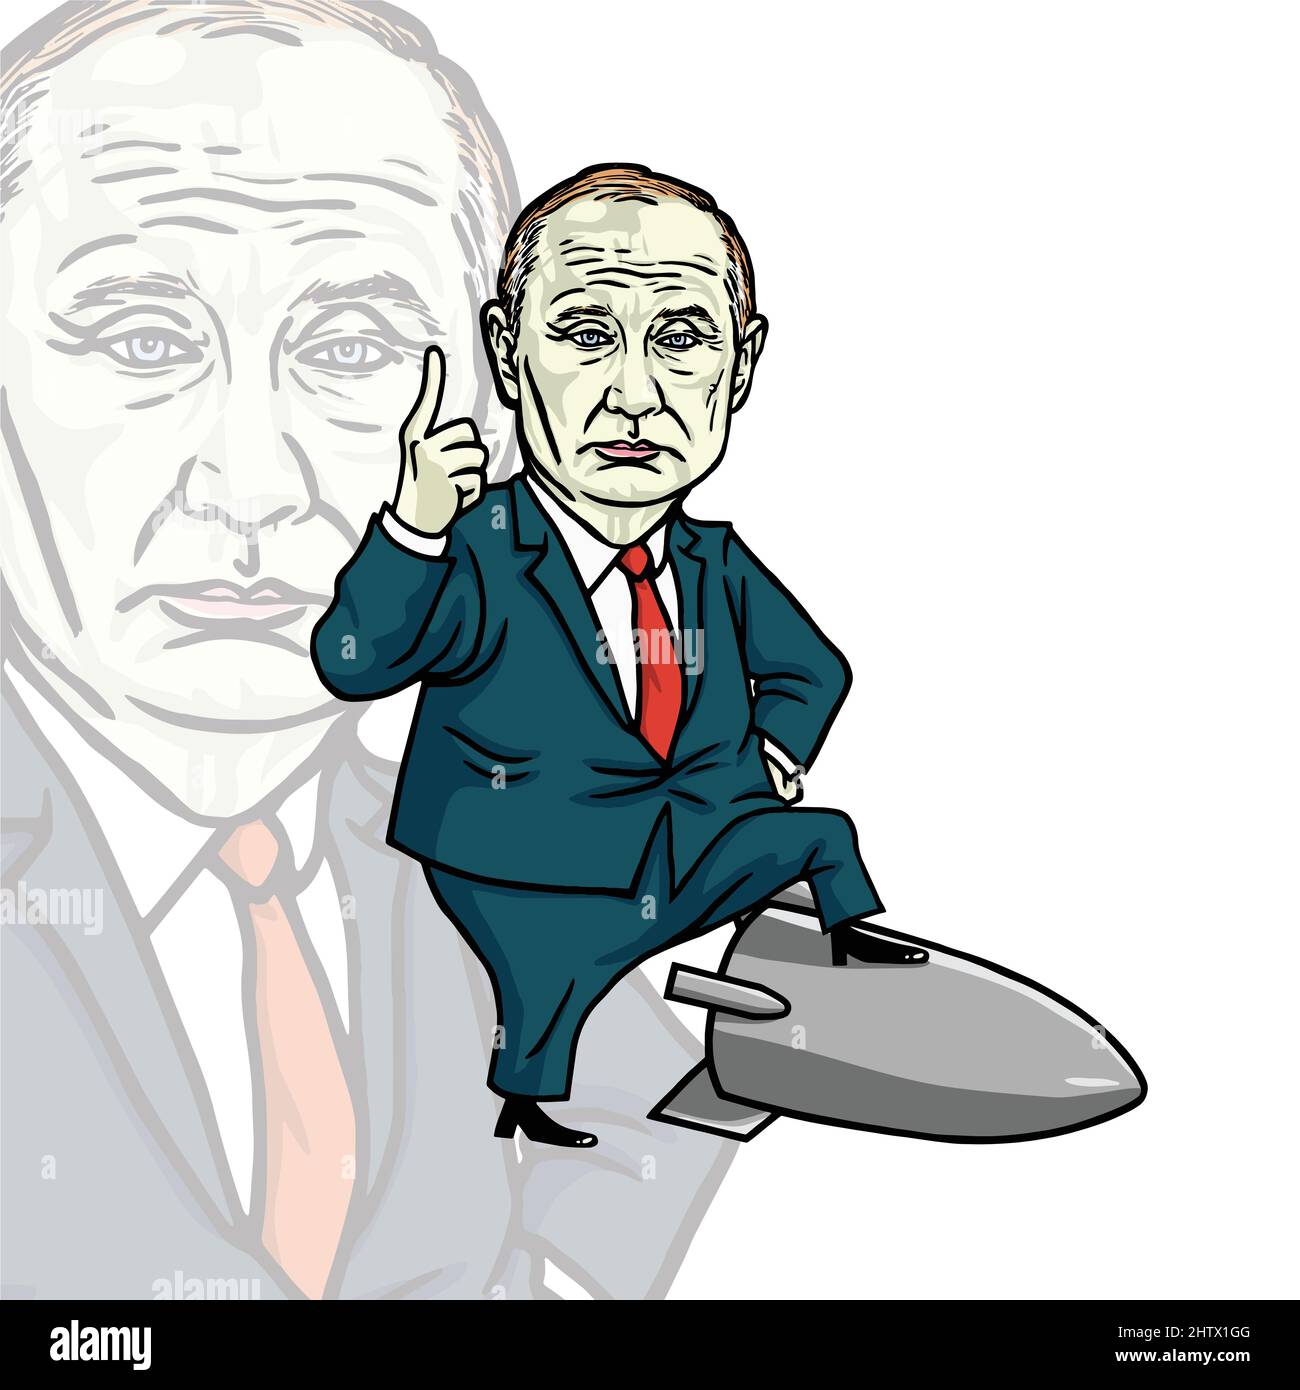 Vladimir Poutine Président de Russie Fédération de Russie caricature de dessin vectoriel Illustration debout sur une arme missile fusée Moscou Illustration de Vecteur